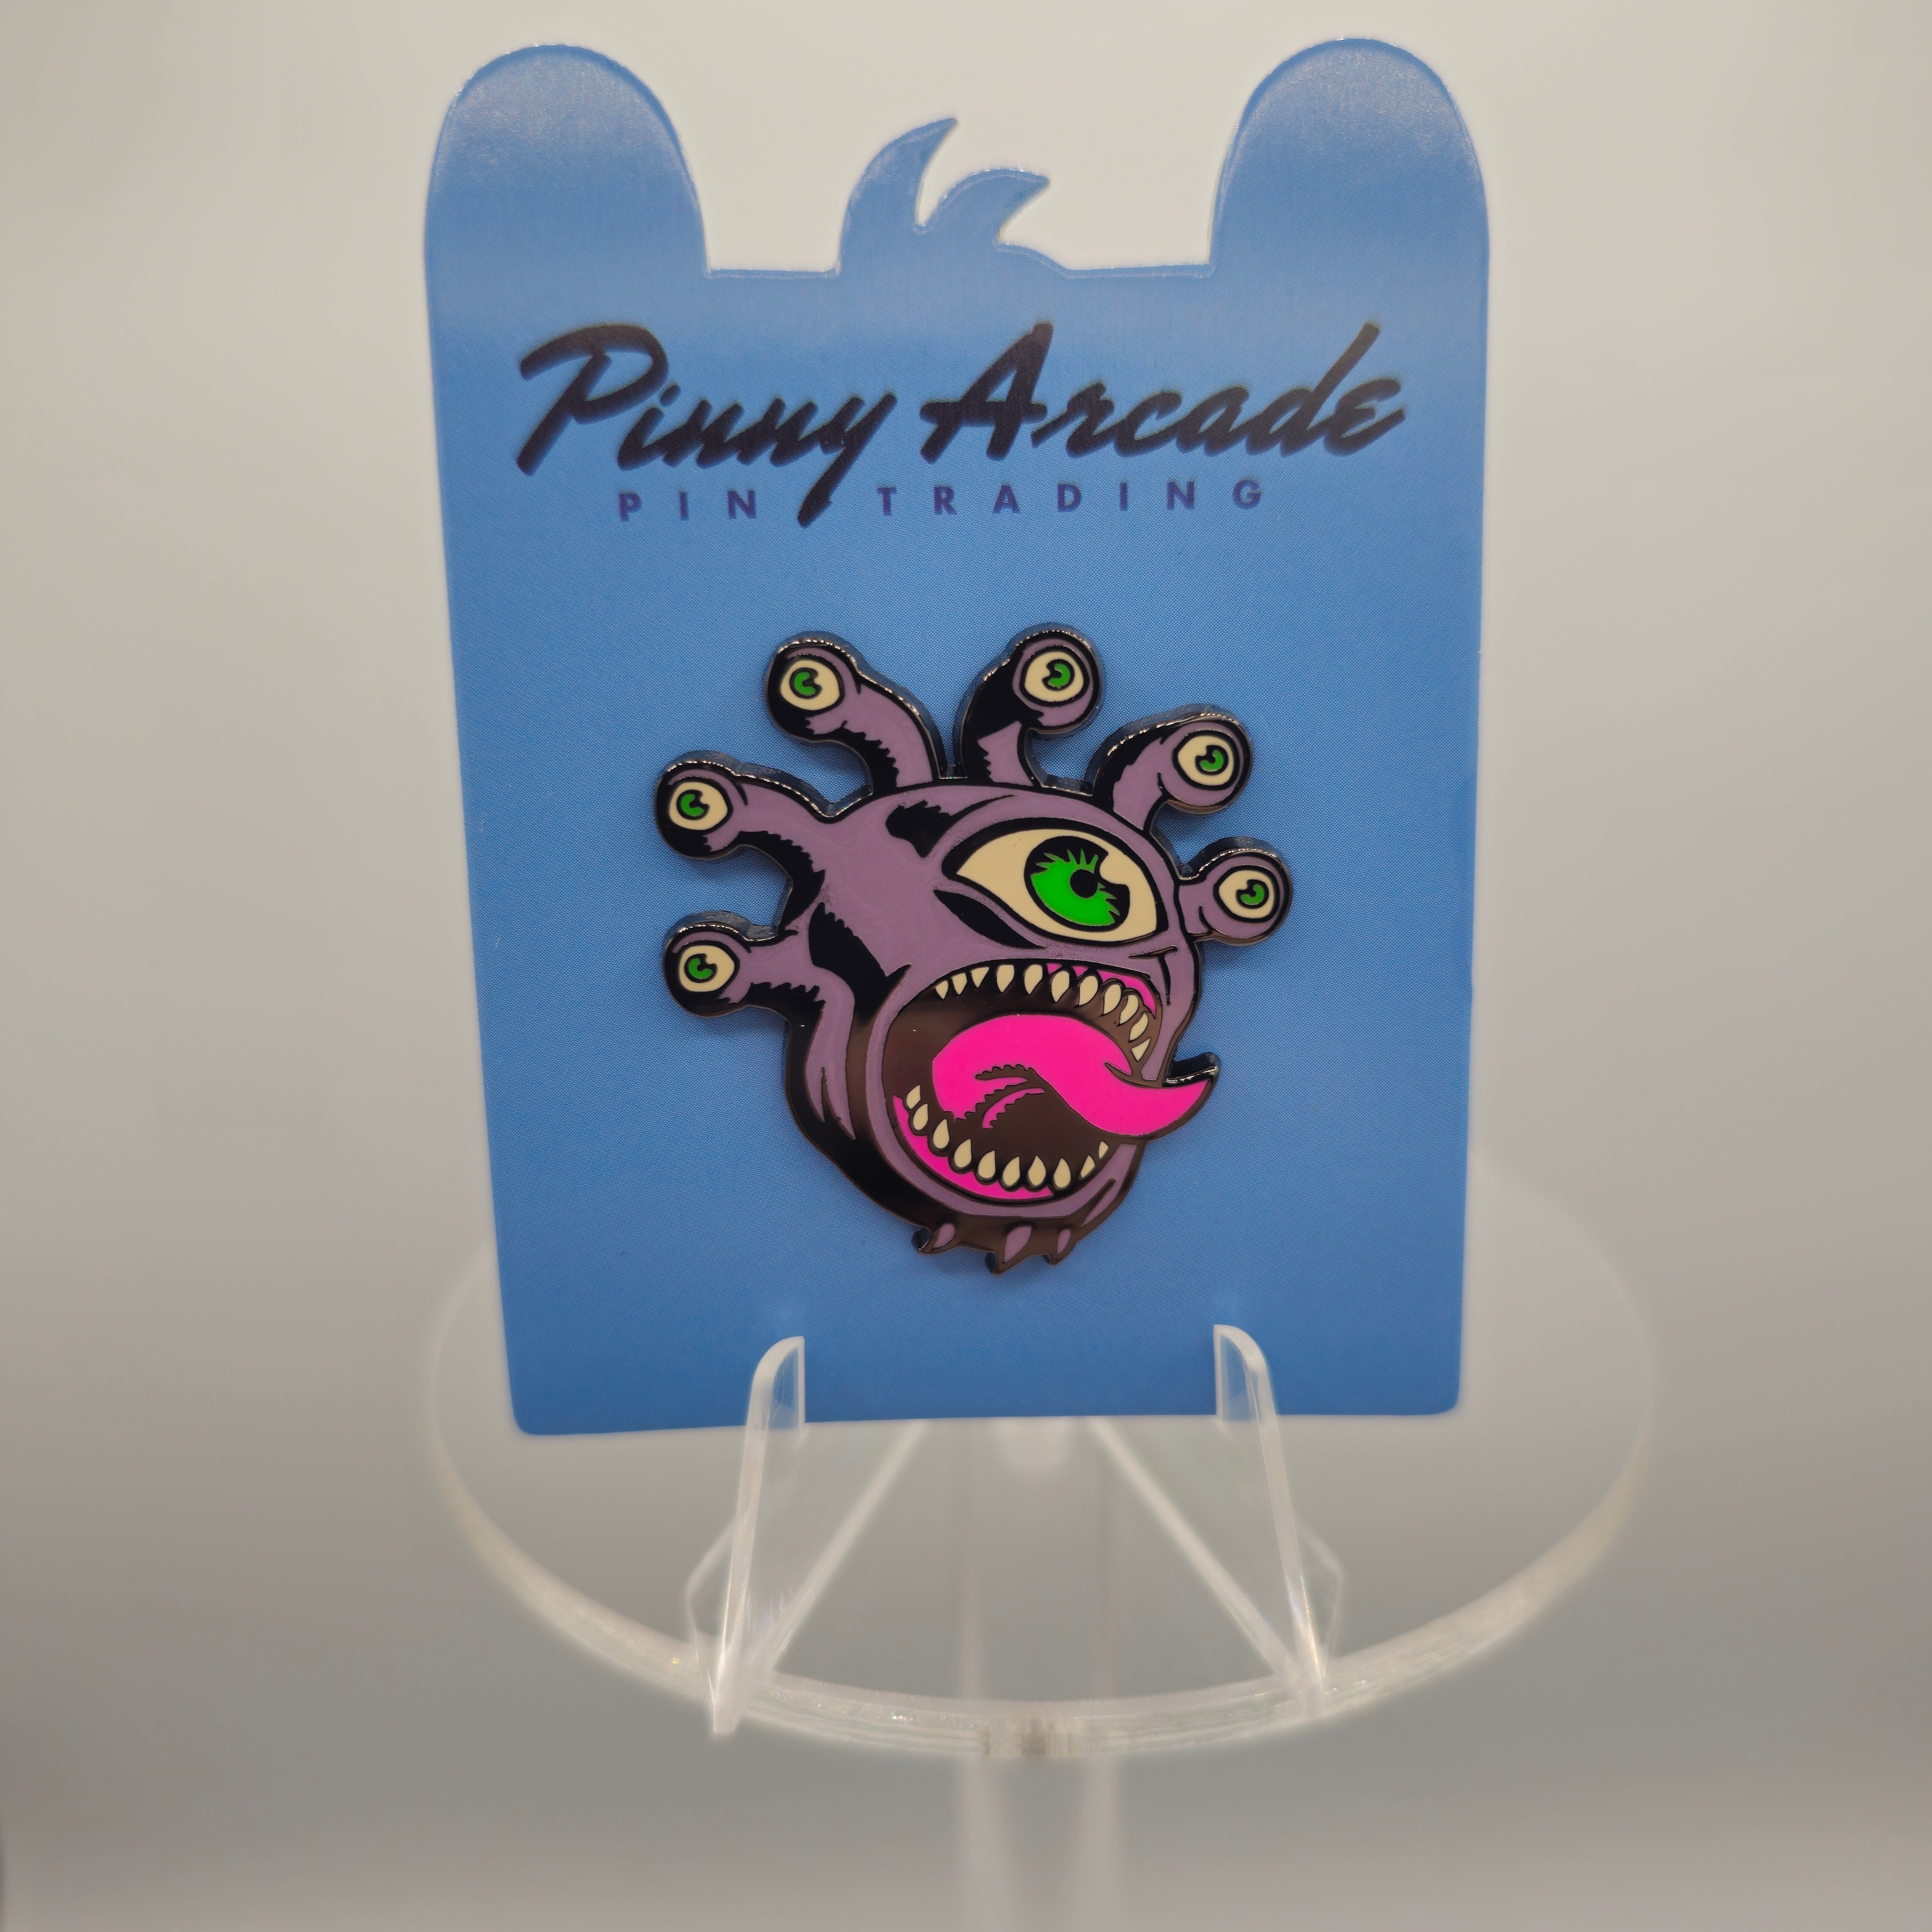 Pinny Arcade Pins - EyeCU